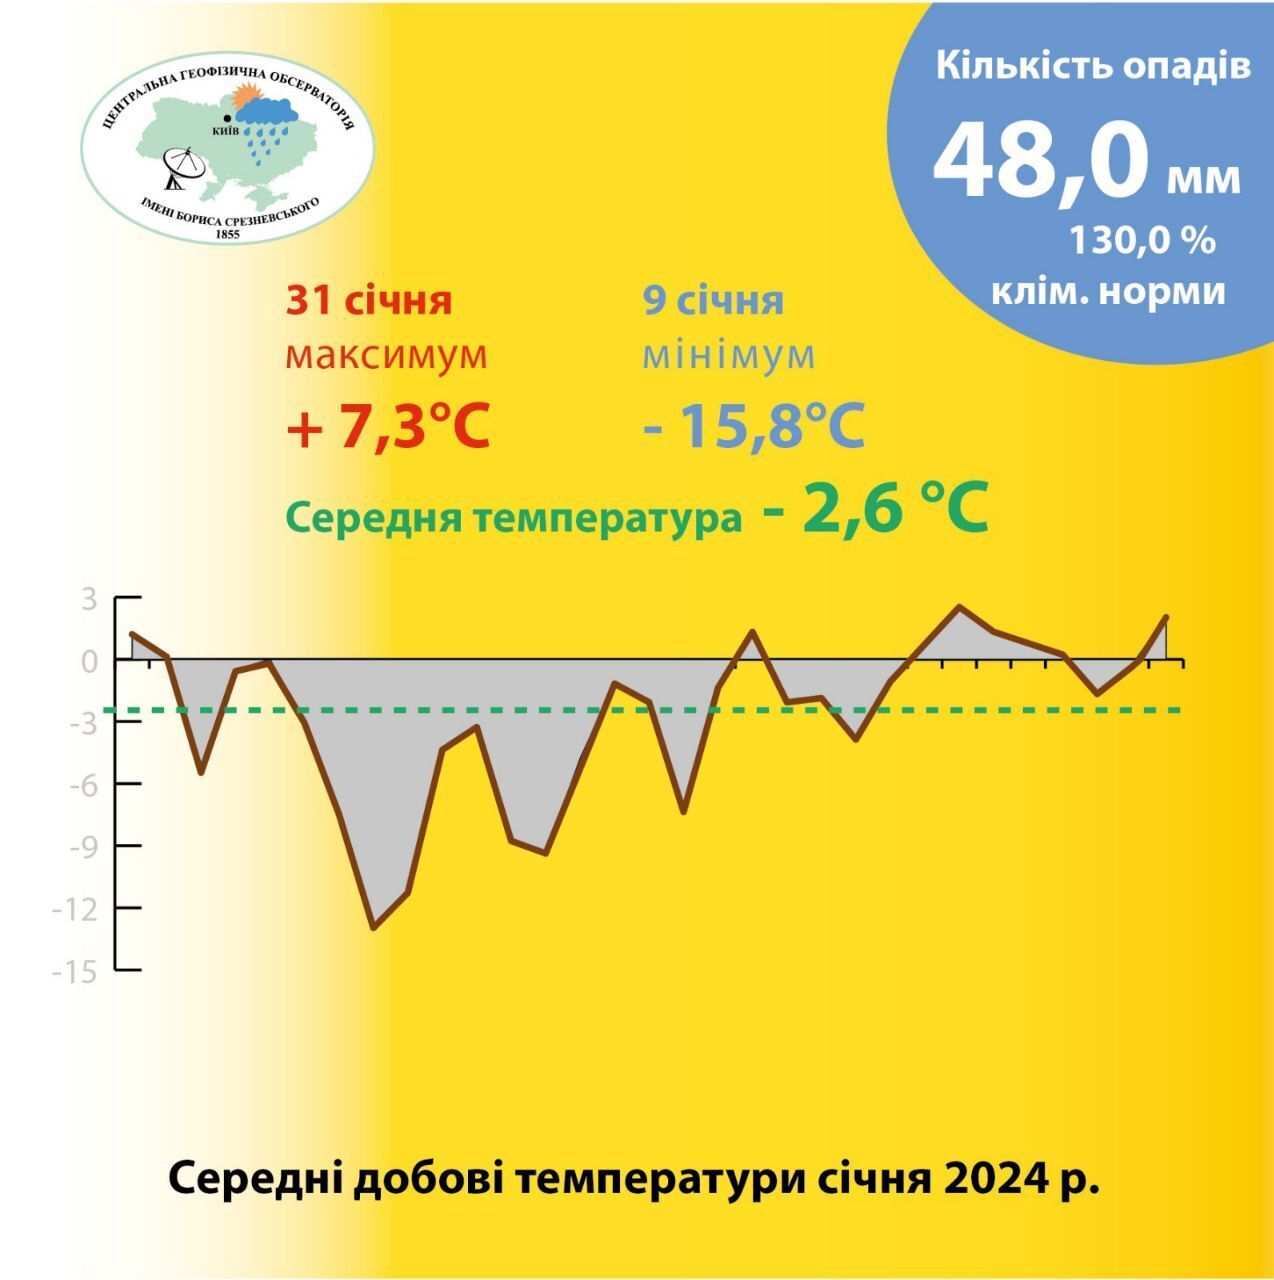 Осадков – 130% от климатической нормы: в Киеве подвели погодные итоги января